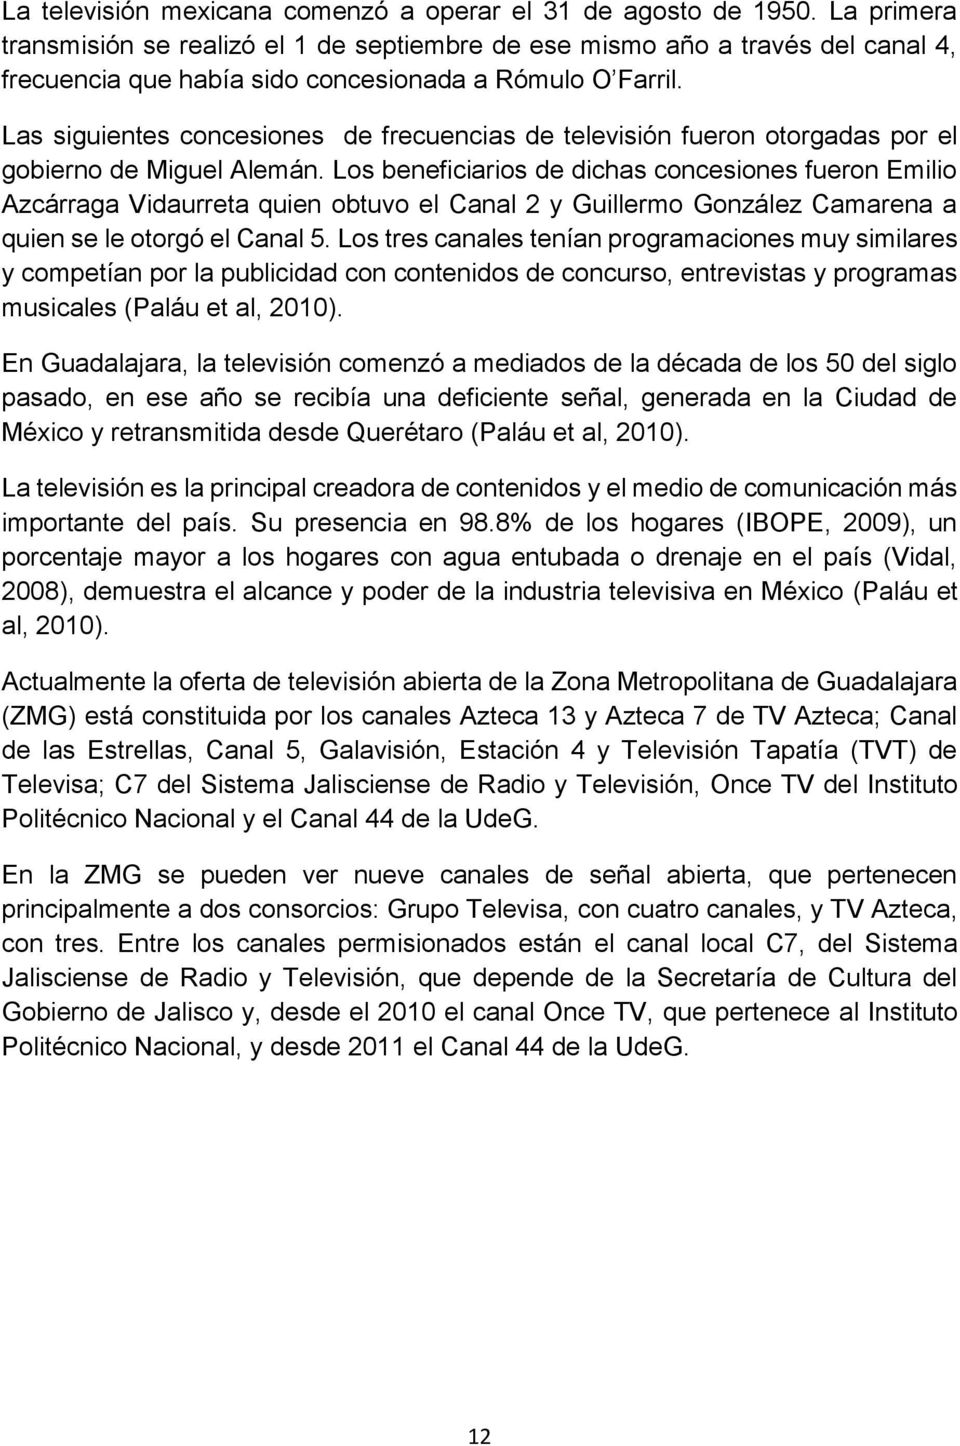 Las siguientes concesiones de frecuencias de televisión fueron otorgadas por el gobierno de Miguel Alemán.